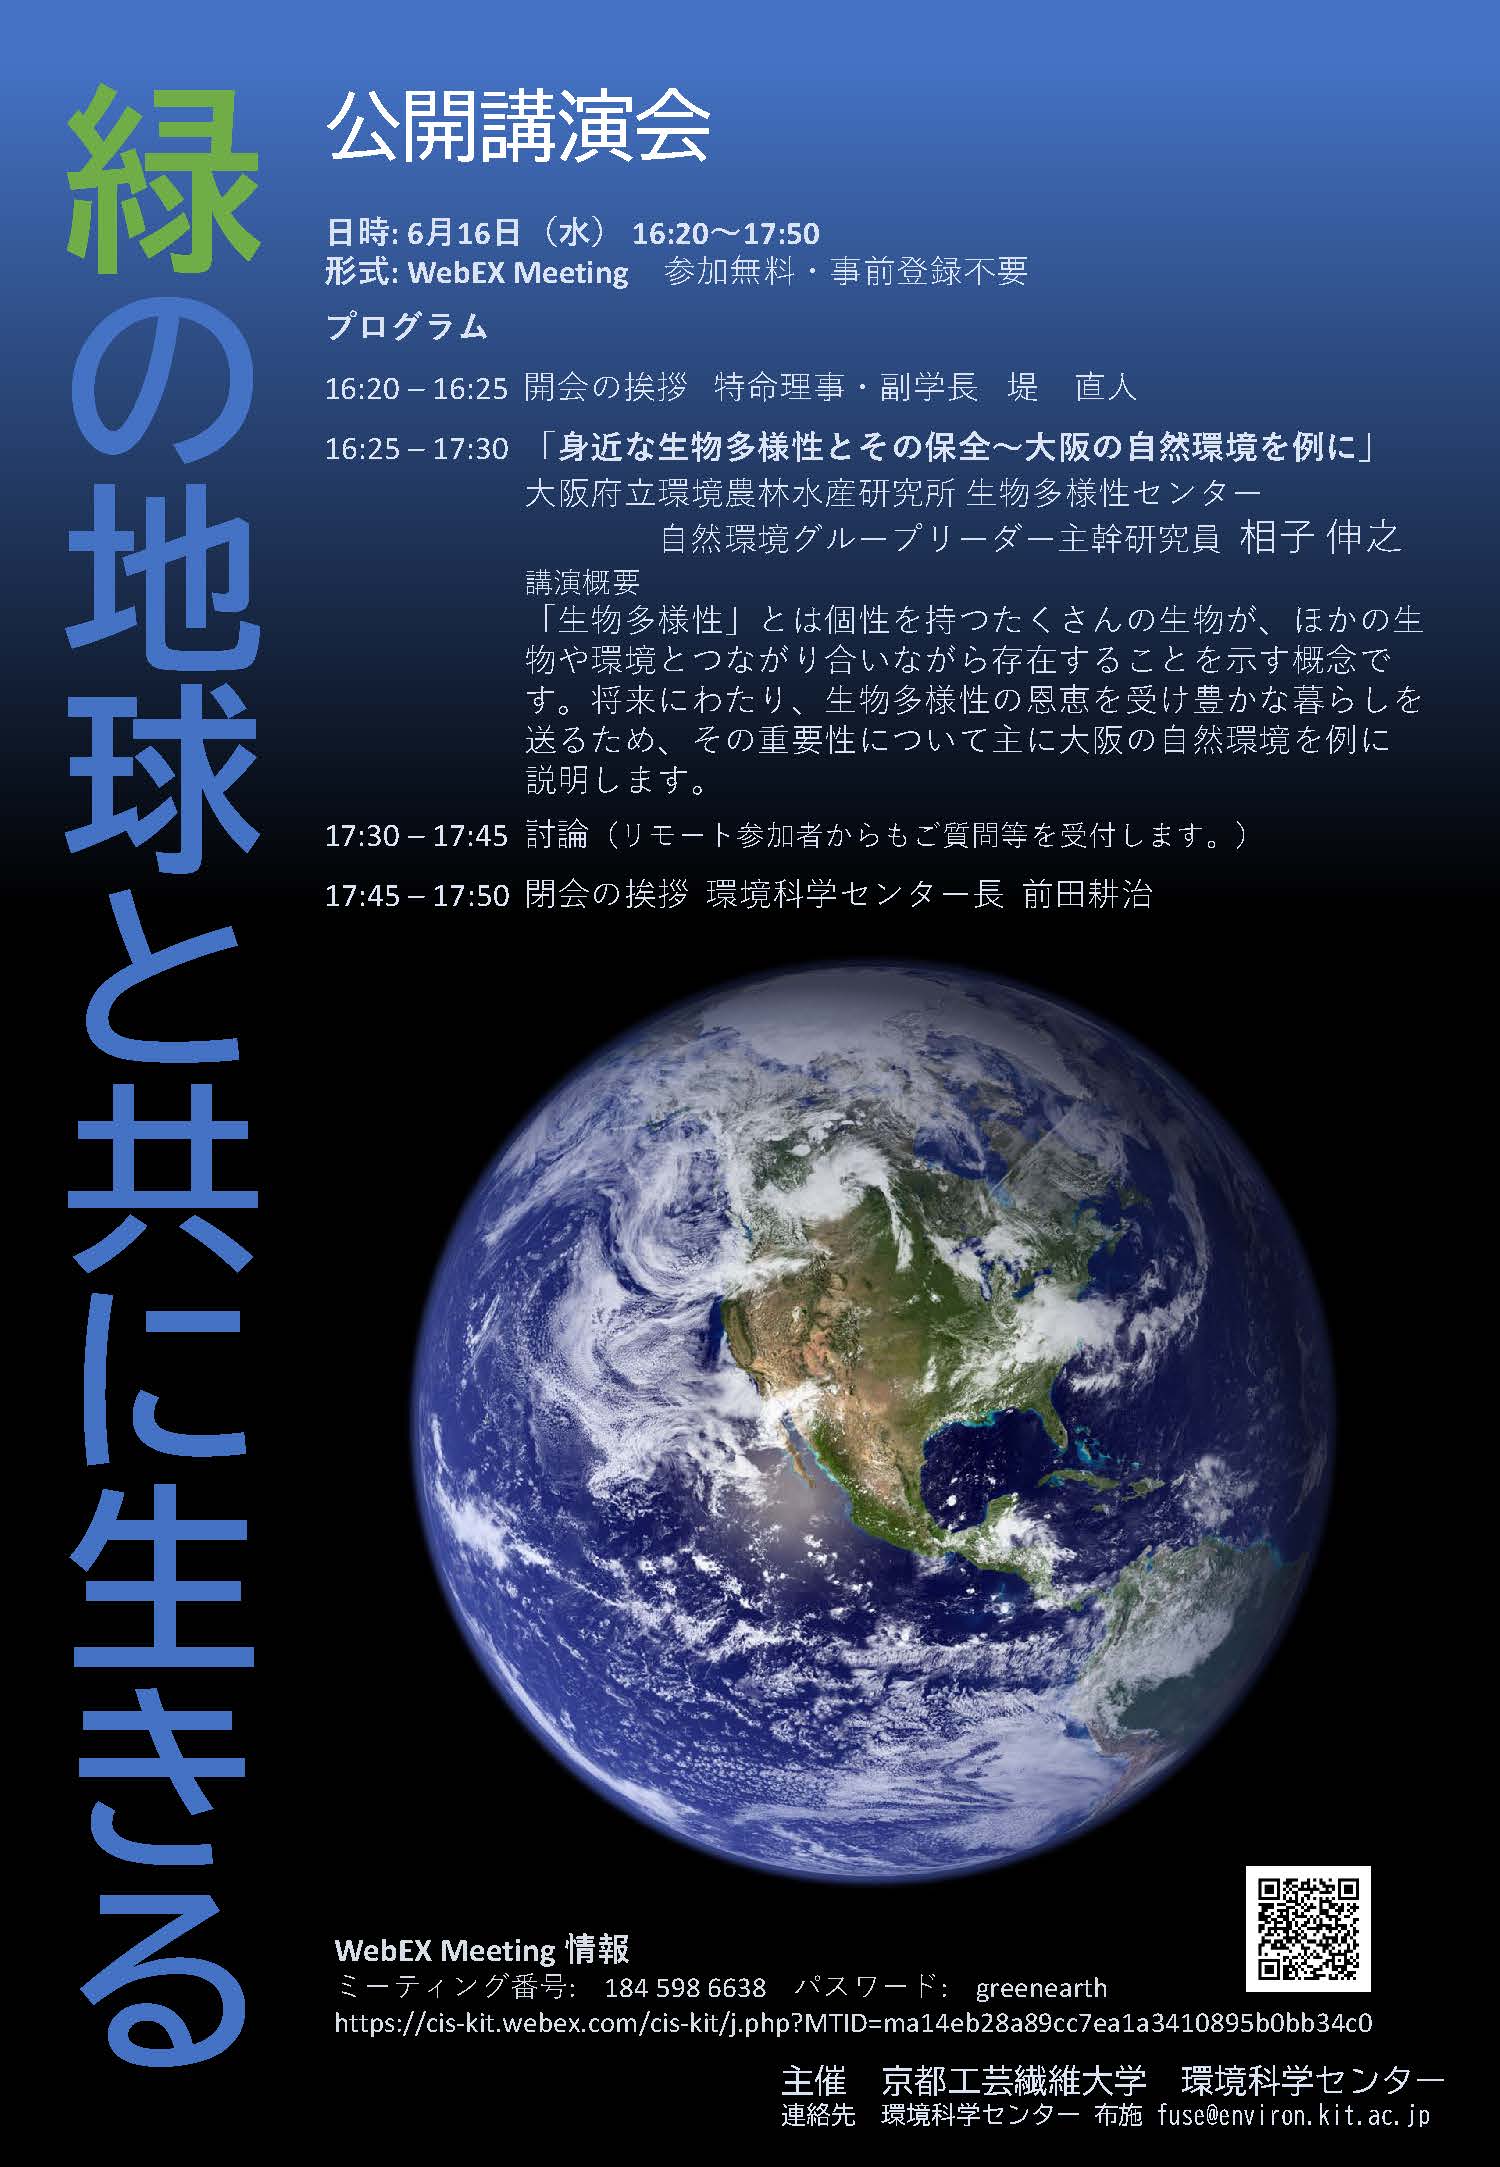 公開講演会 緑の地球と共に生きる 京都工芸繊維大学